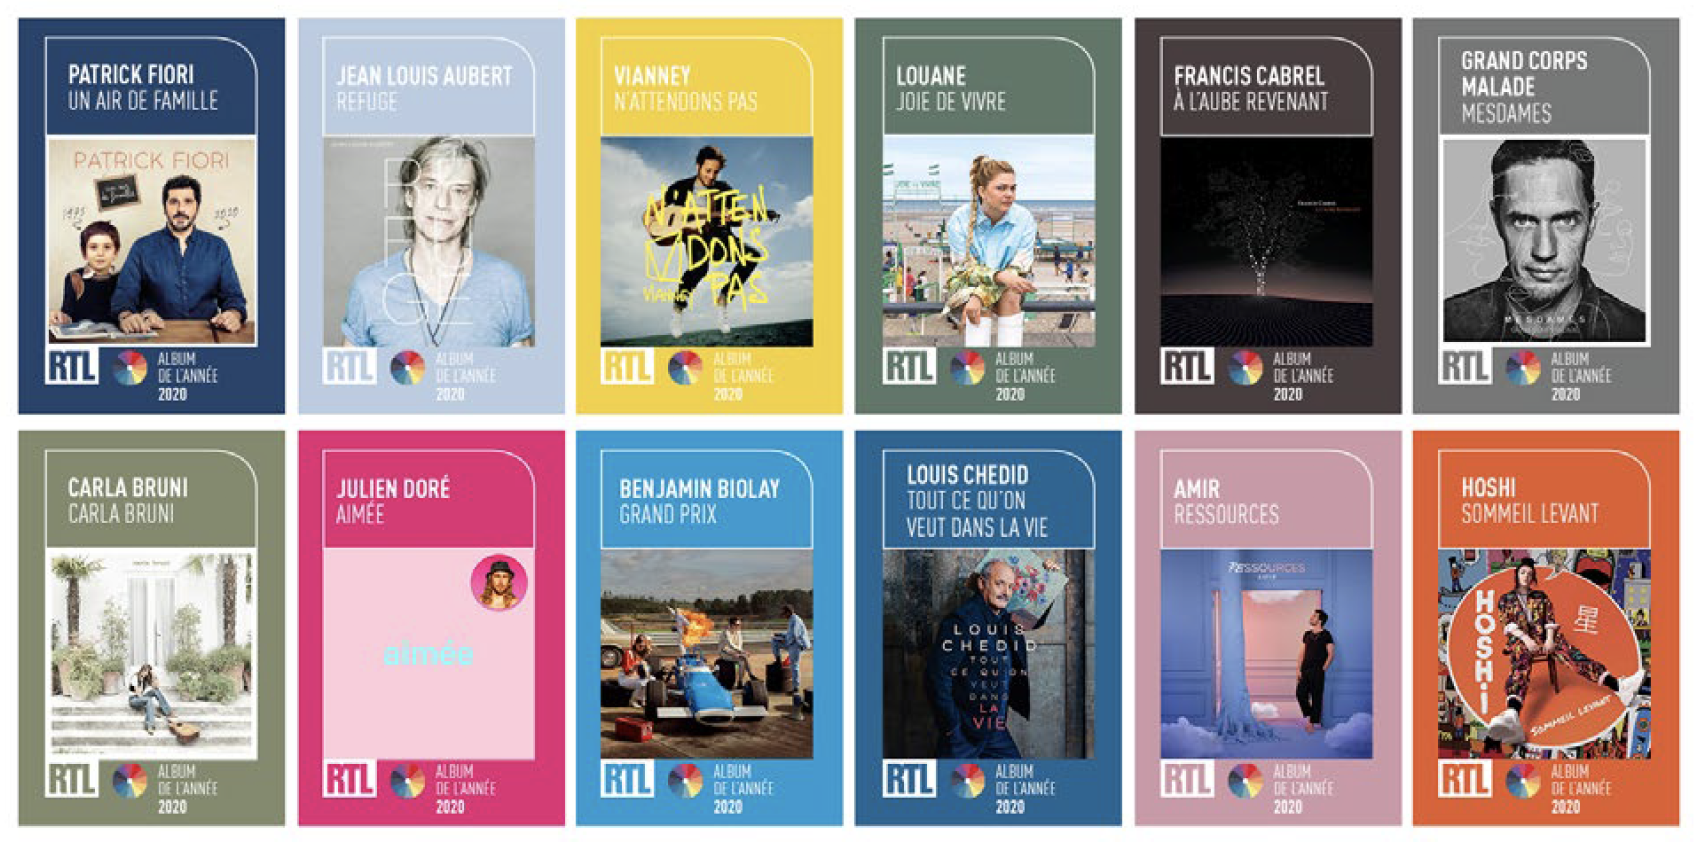 RTL lance son Prix "Album de l'année 2020"